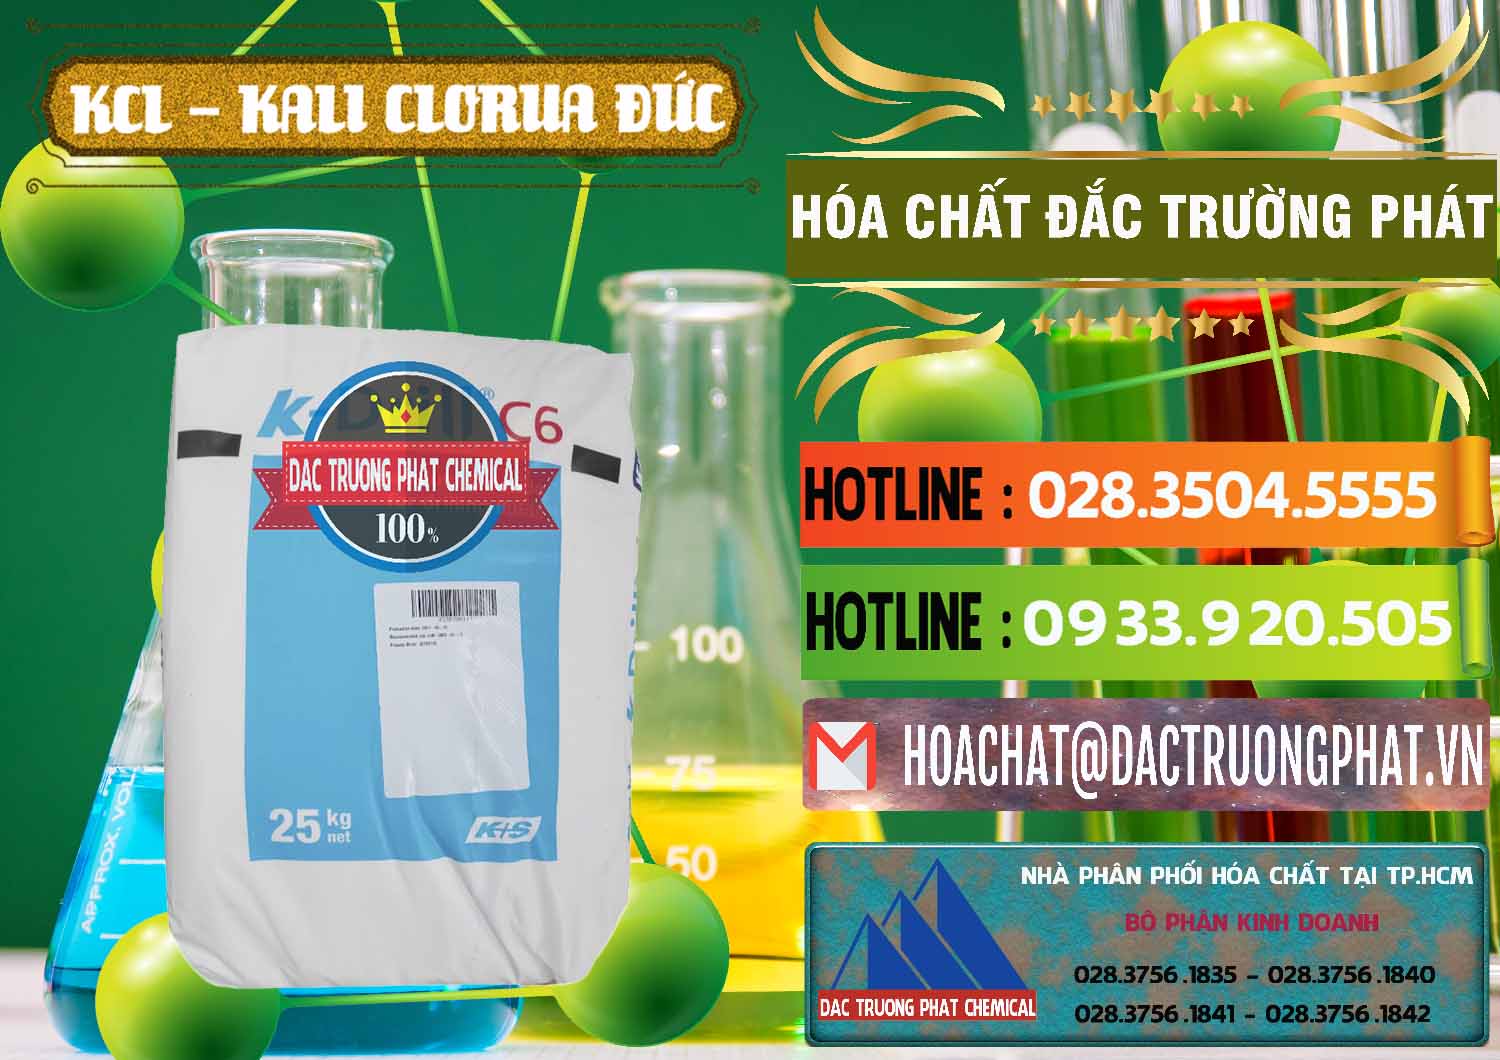 Cty chuyên cung ứng & bán KCL – Kali Clorua Trắng K DRILL Đức Germany - 0428 - Nơi chuyên nhập khẩu ( cung cấp ) hóa chất tại TP.HCM - cungcaphoachat.com.vn